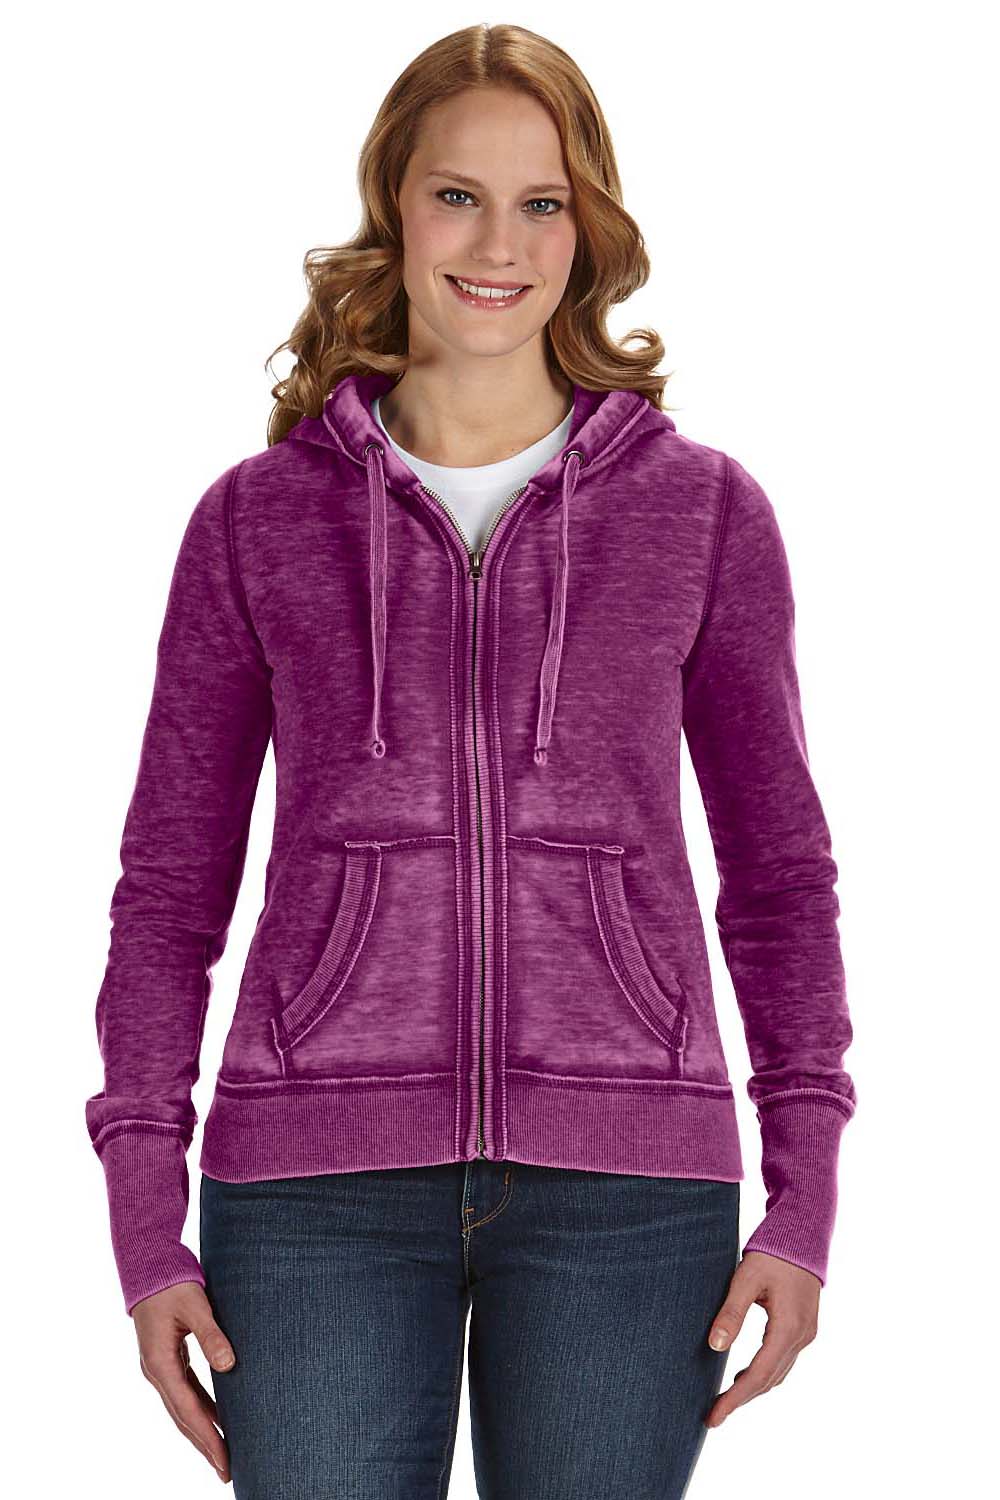 J America JA8913 Womens Zen Burnout Fleece Full Zip Hooded Sweatshirt Hoodie Berry Purple Front